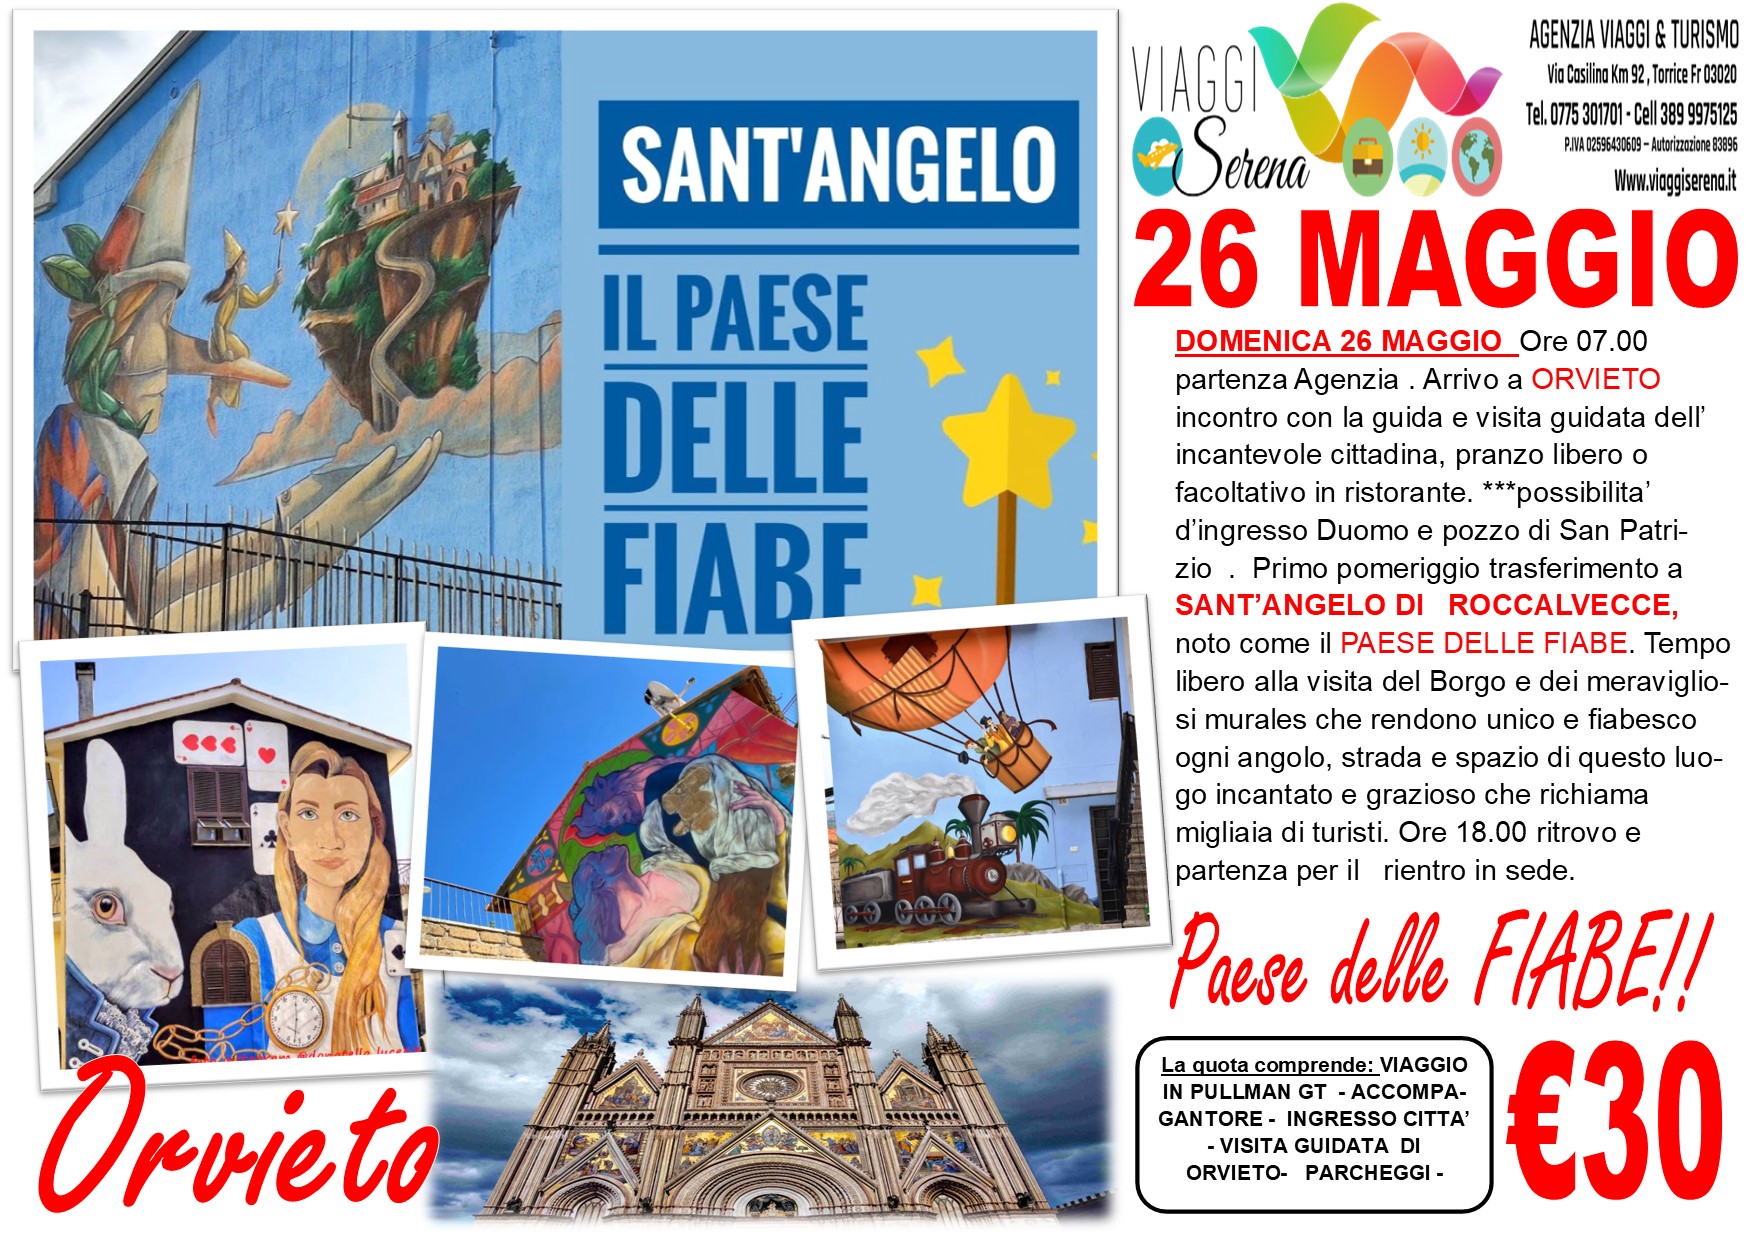 Viaggi di gruppo: Orvieto e Sant’Angelo di Roccalvelcce “il paese delle Fiabe” 26 Maggio € 30,00